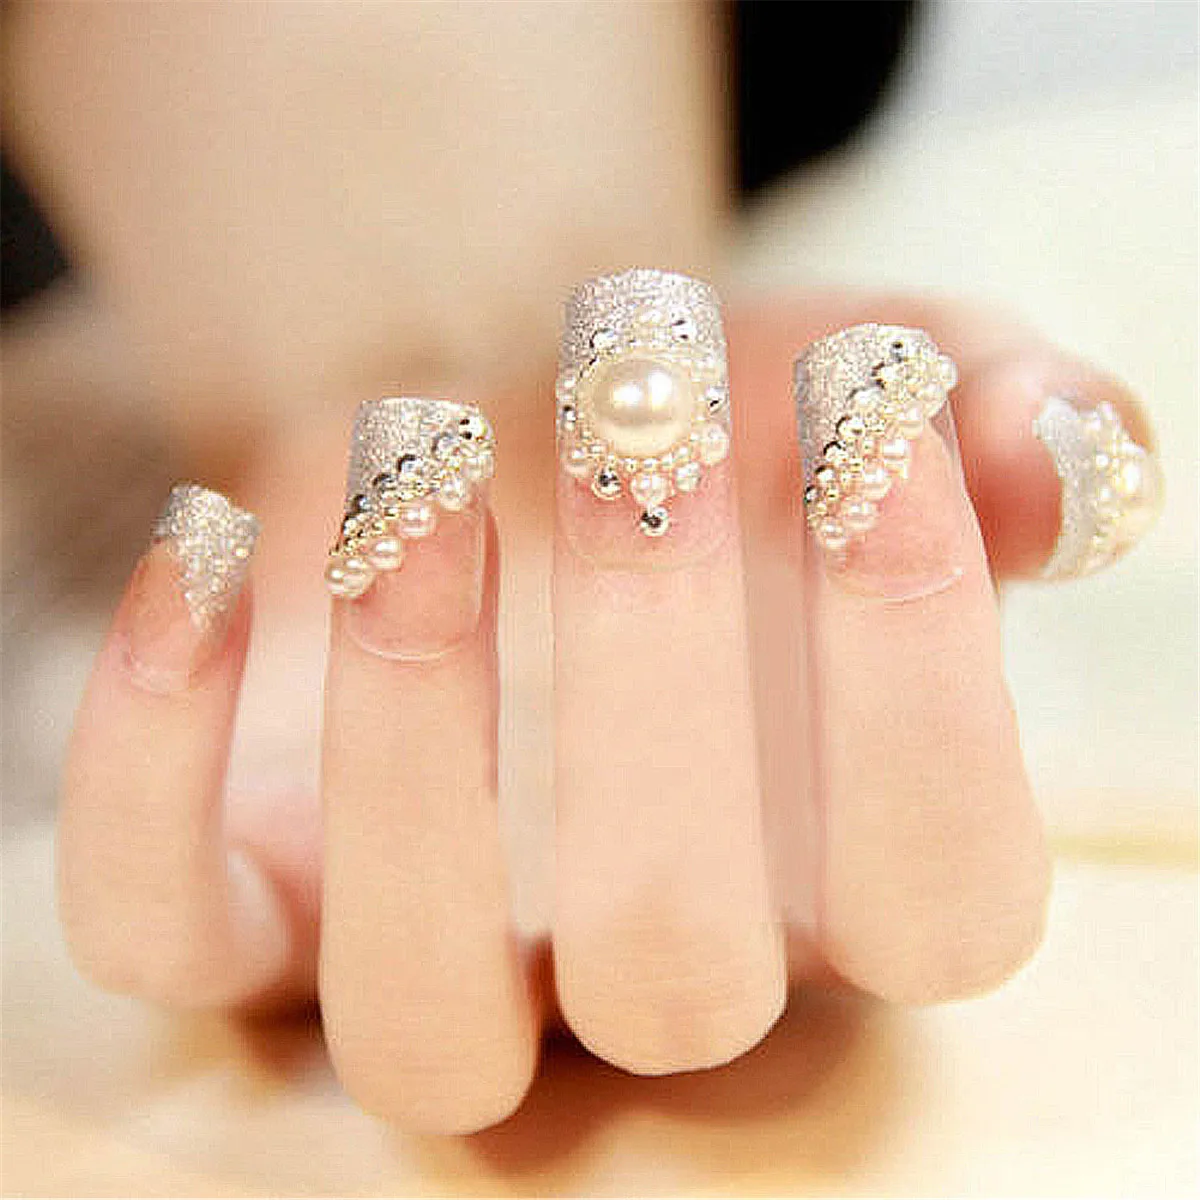 Жемчуг для ногтей белые жемчужины для дизайна ногтей различные размеры колеса бусы со стразами 3D камни и кристаллы для ногтей гелевые Драгоценности для ногтей